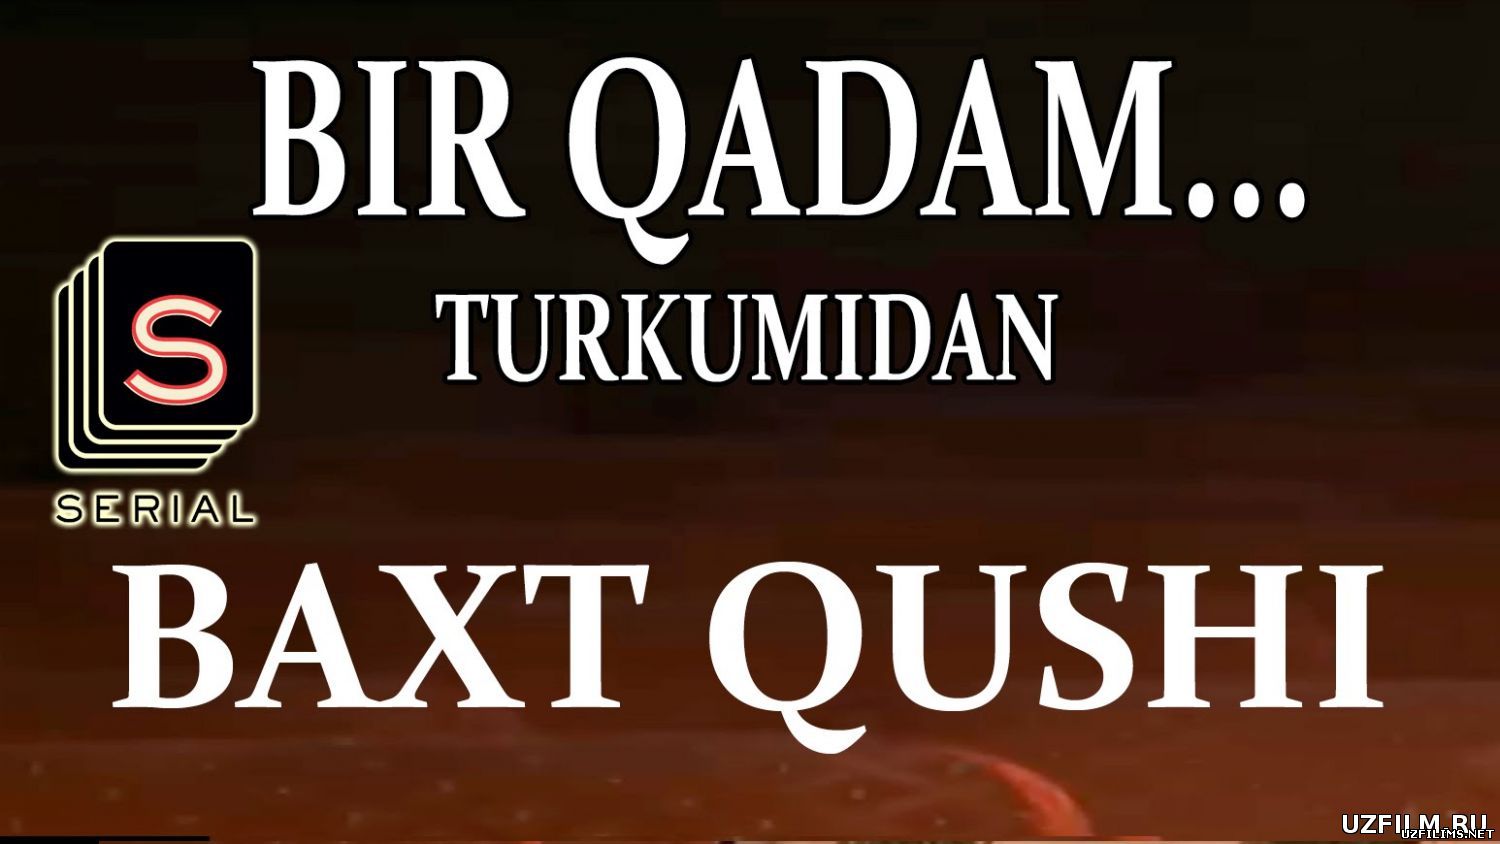 Baxt Qushi (bir qadam turkumidan) 2015